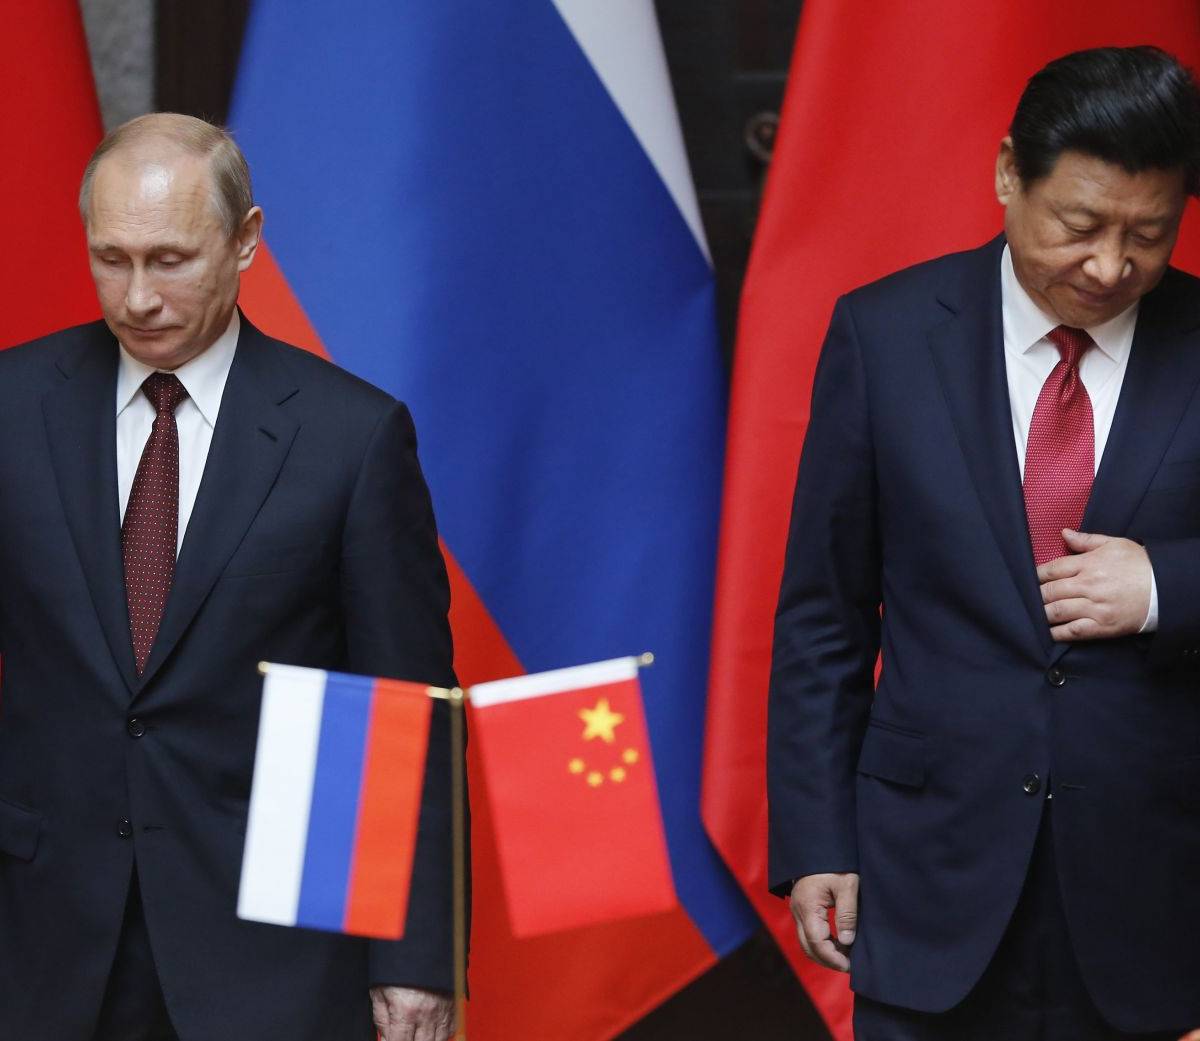 СМИ после ПМЭФ осознали, что будущее мира теперь определяют Россия и Китай